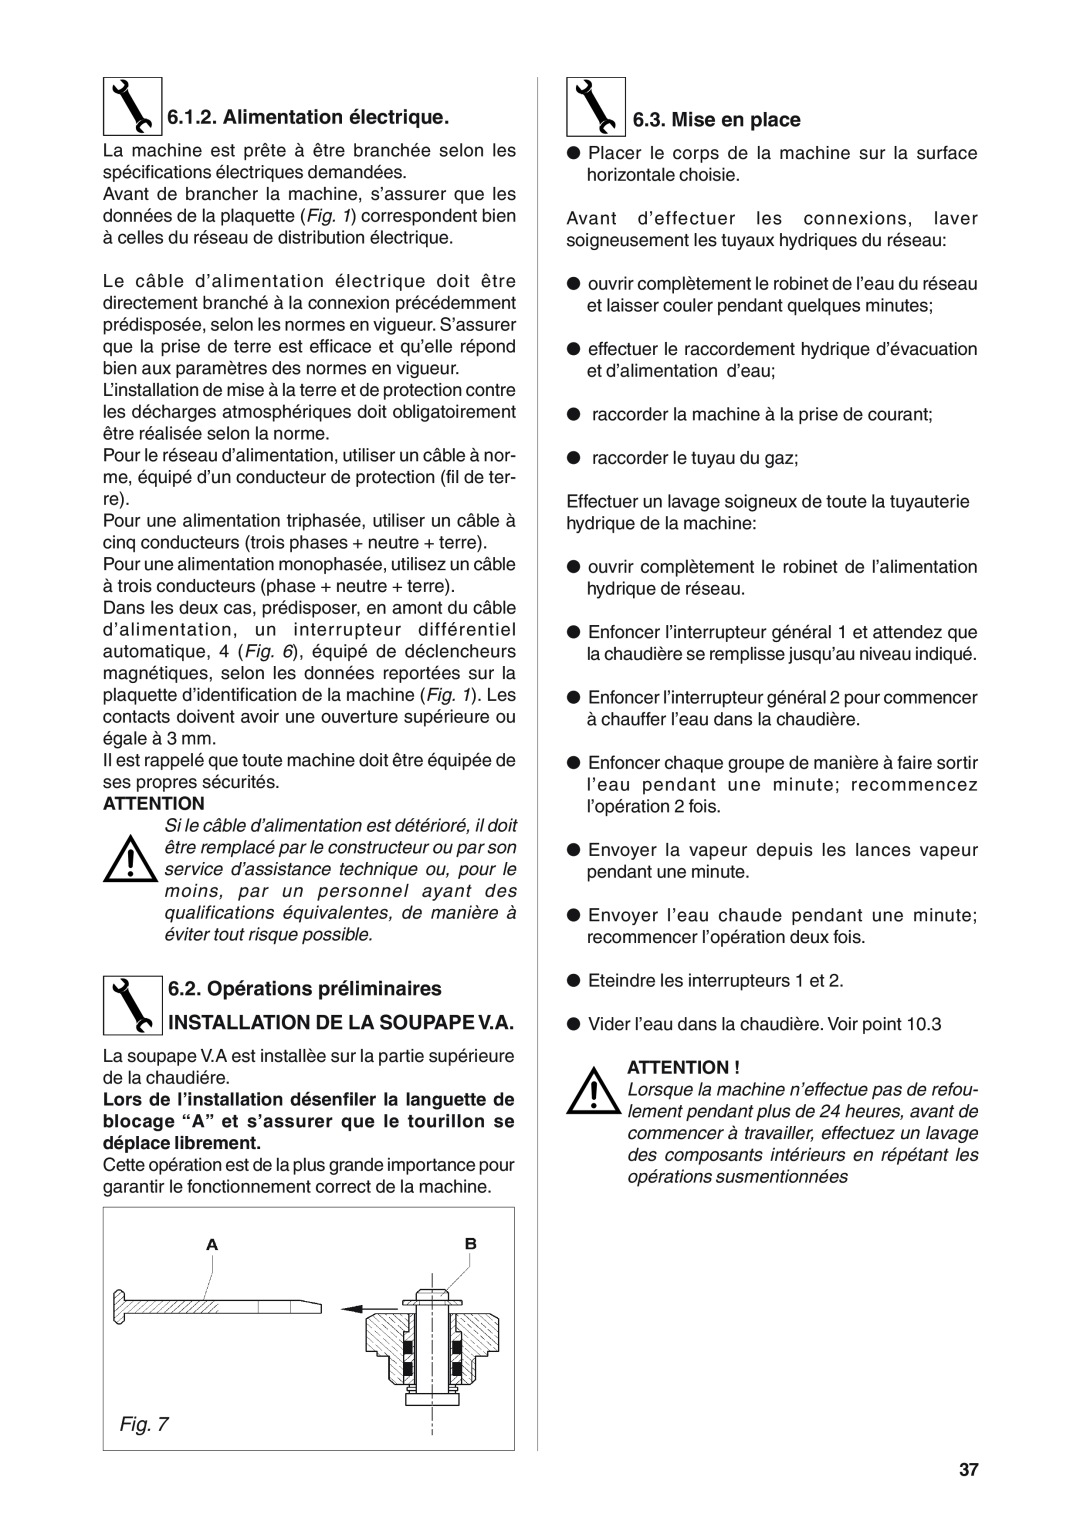 Rancilio S20 manual Alimentation électrique, 6.2. Opérations préliminaires INSTALLATION DE LA SOUPAPE V.A, Mise en place 